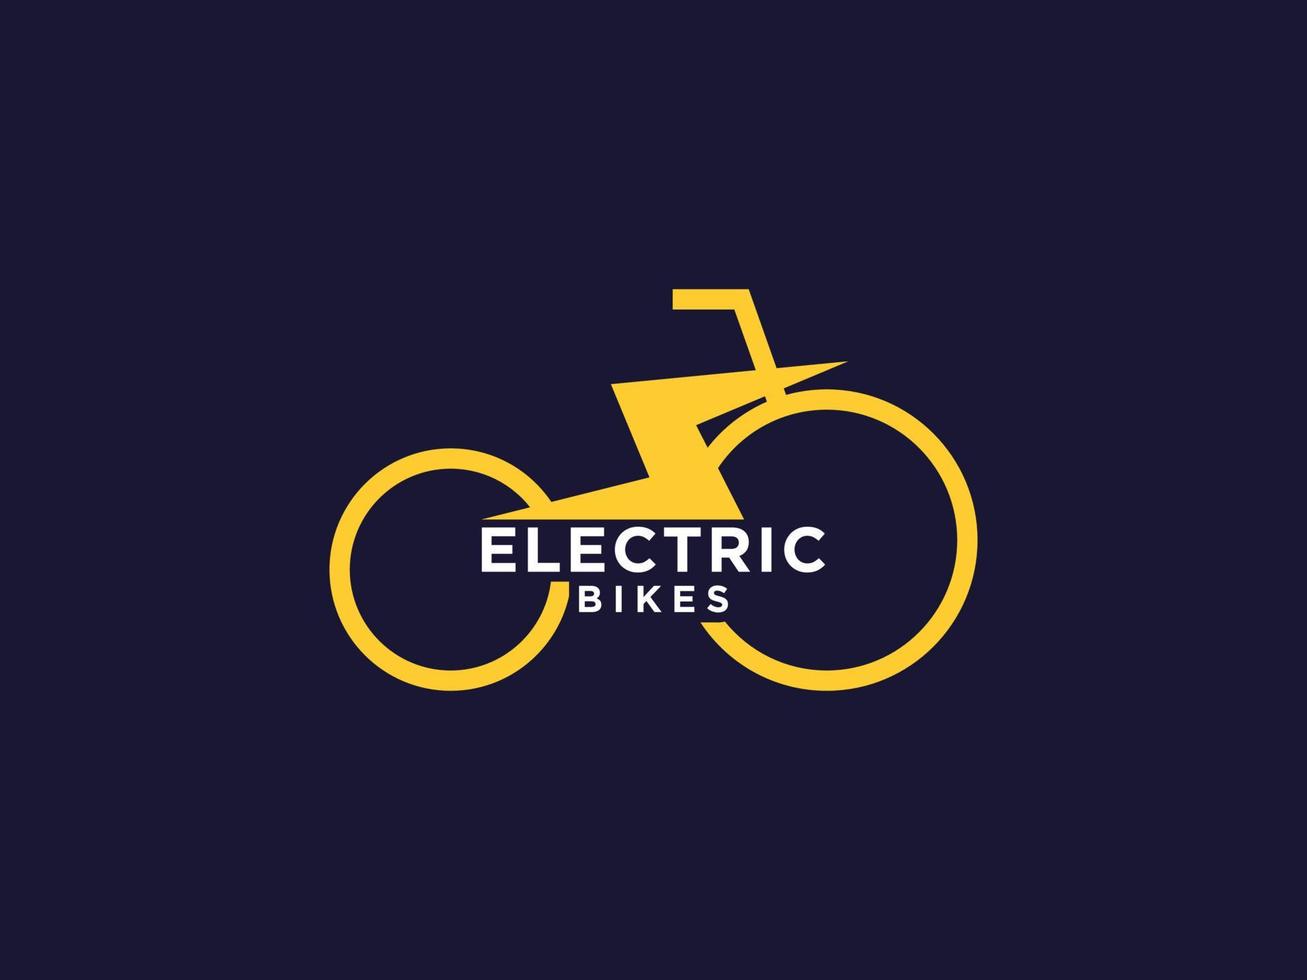 loja de bicicletas elétricas e logotipos de serviço vetor